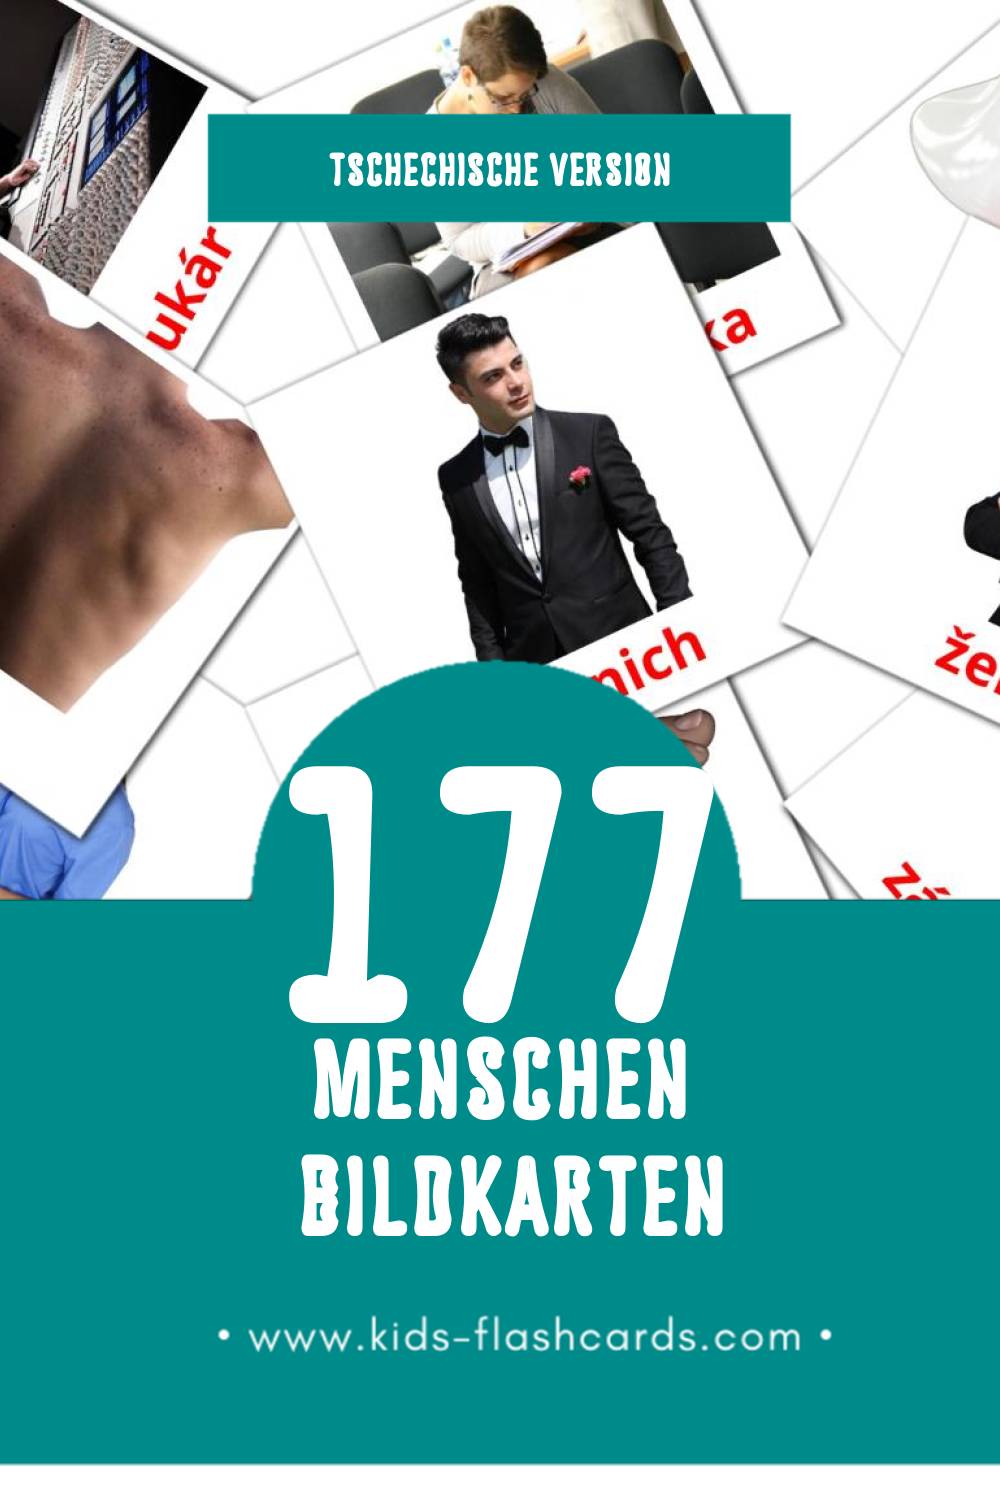 Visual Lidé Flashcards für Kleinkinder (177 Karten in Tschechisch)